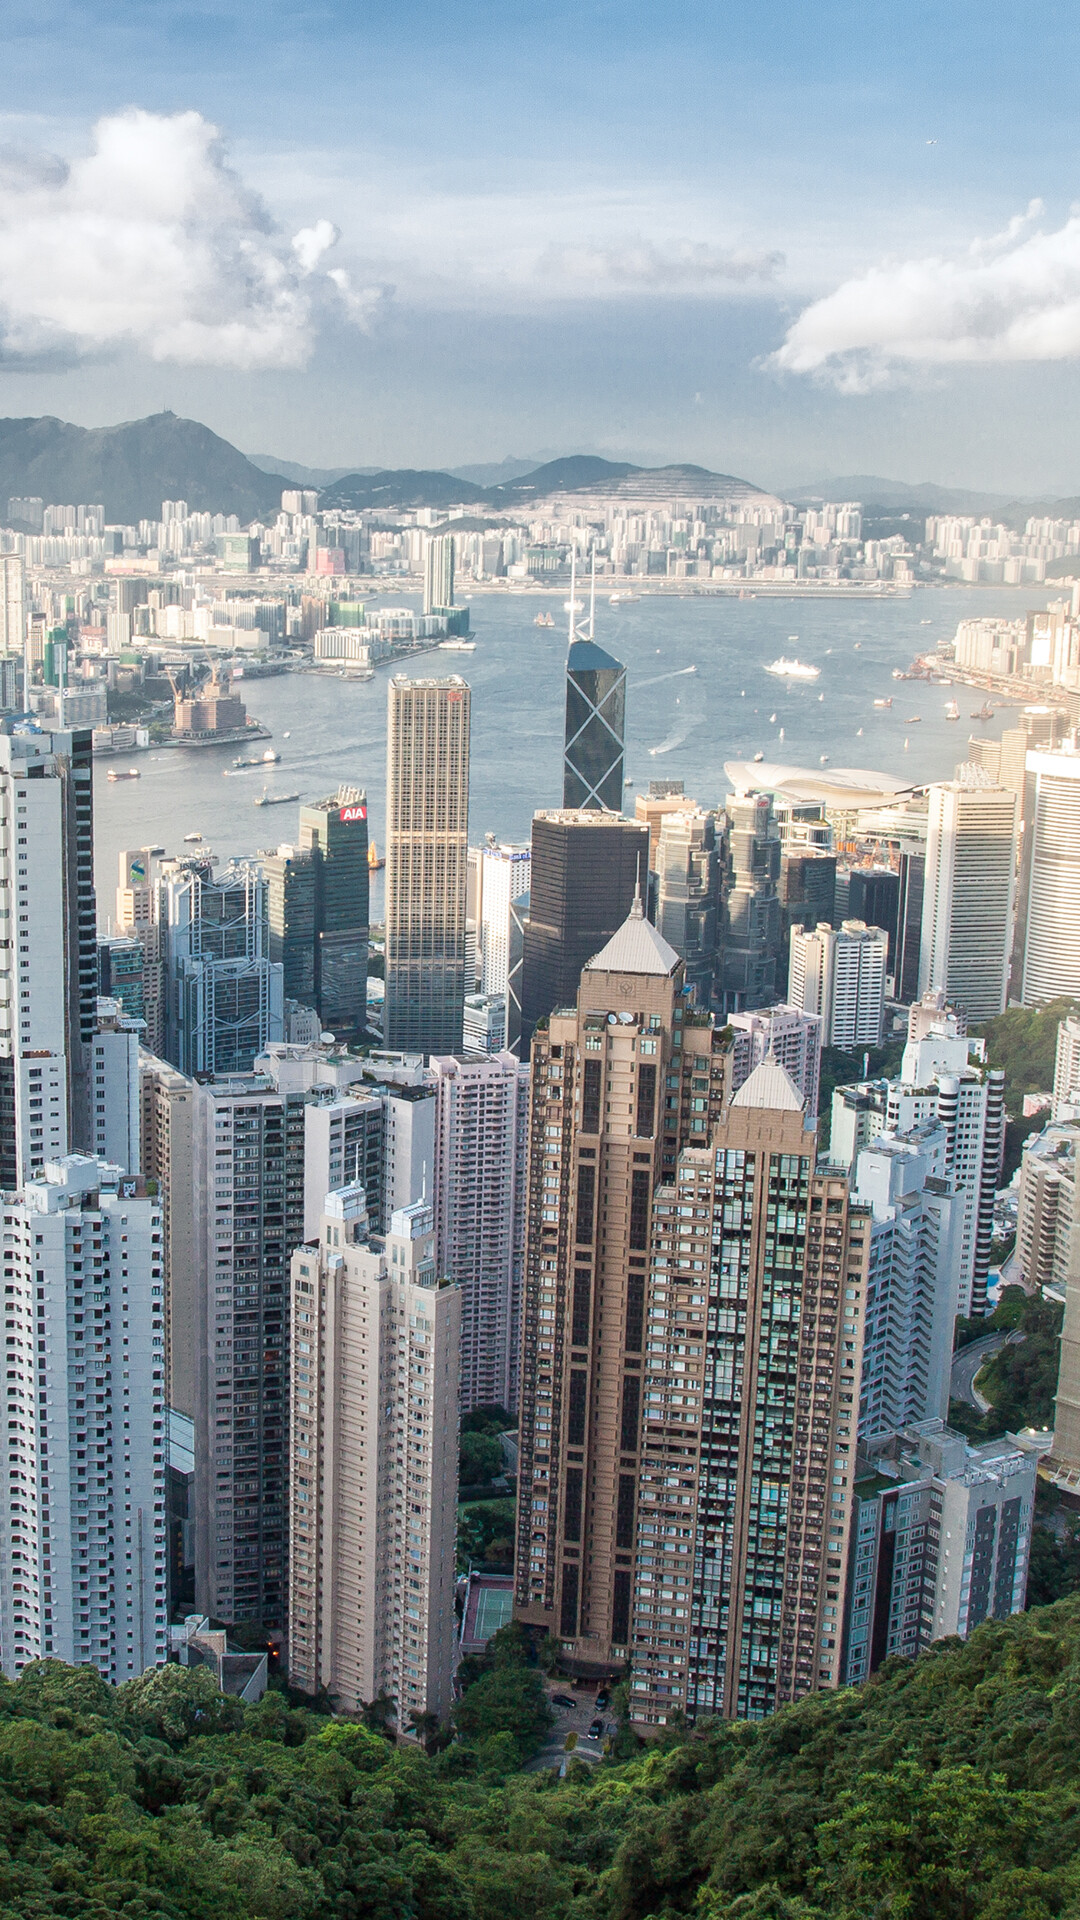 Hong Kong: The Peak, Aerial view, Buildings, Arhitecture. 1080x1920 Full HD Wallpaper.